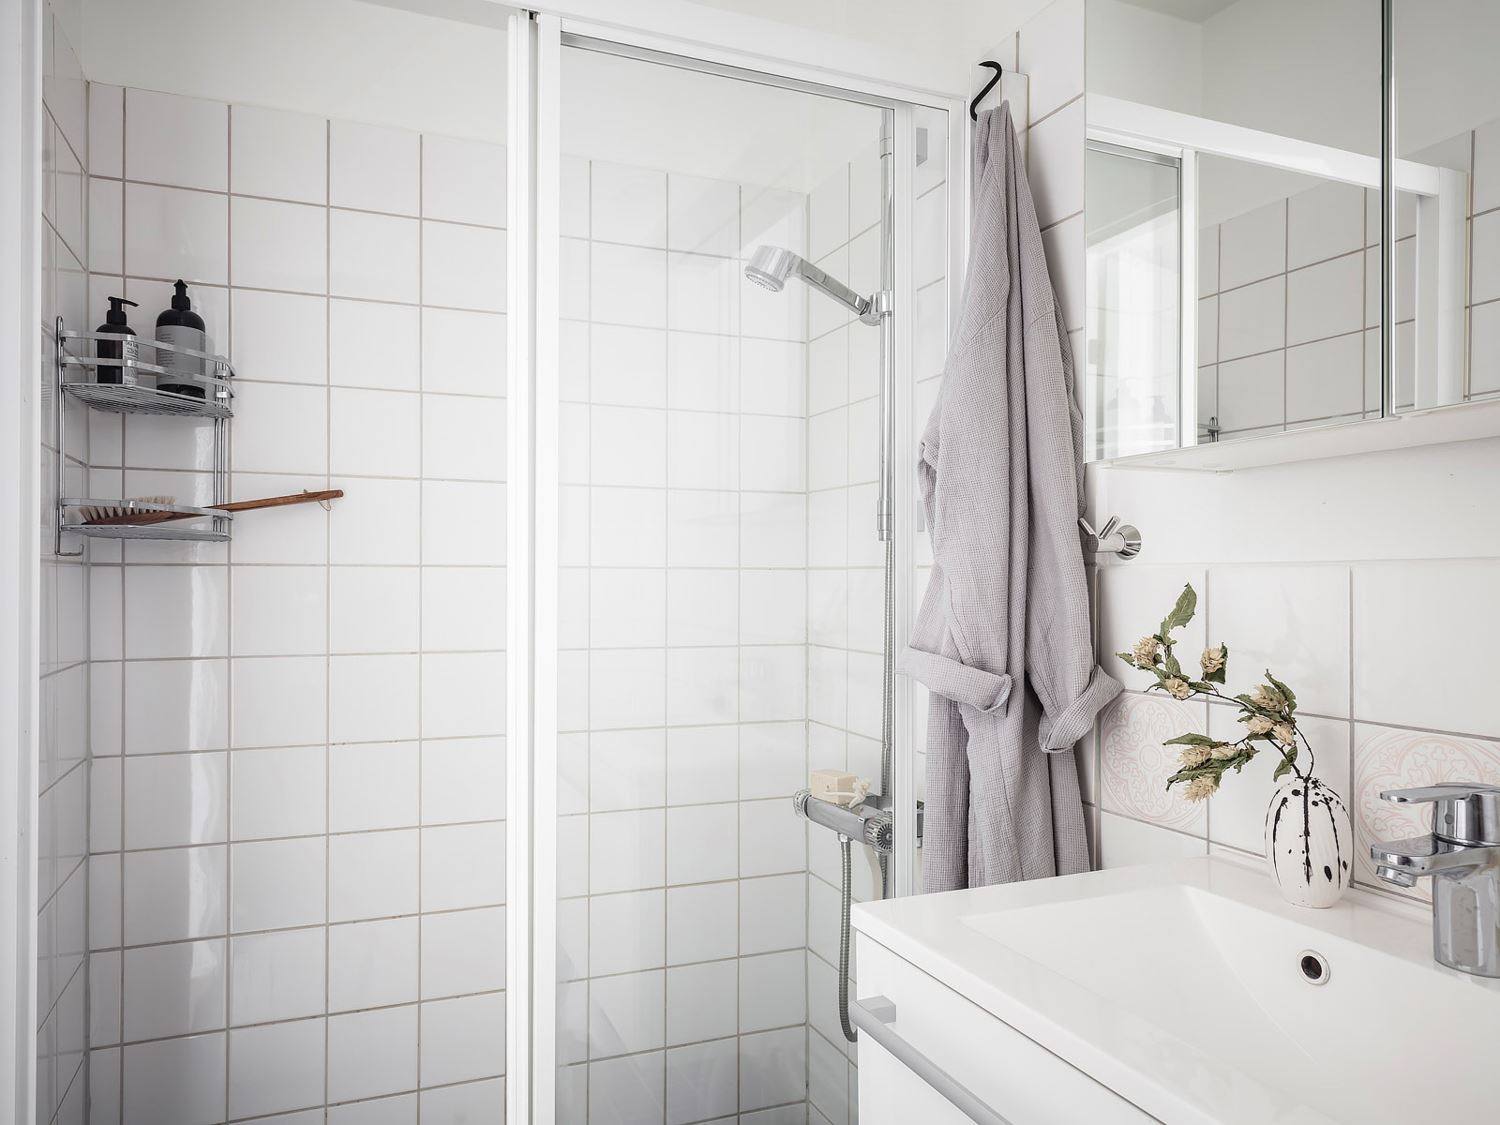 Khu vực buồng tắm đứng được phân vùng bởi cửa trượt bằng kính trong suốt. Kệ góc bằng inox trên tường giúp lưu trữ gọn gàng, tận dụng hiệu quả góc tường trong phòng nhỏ.